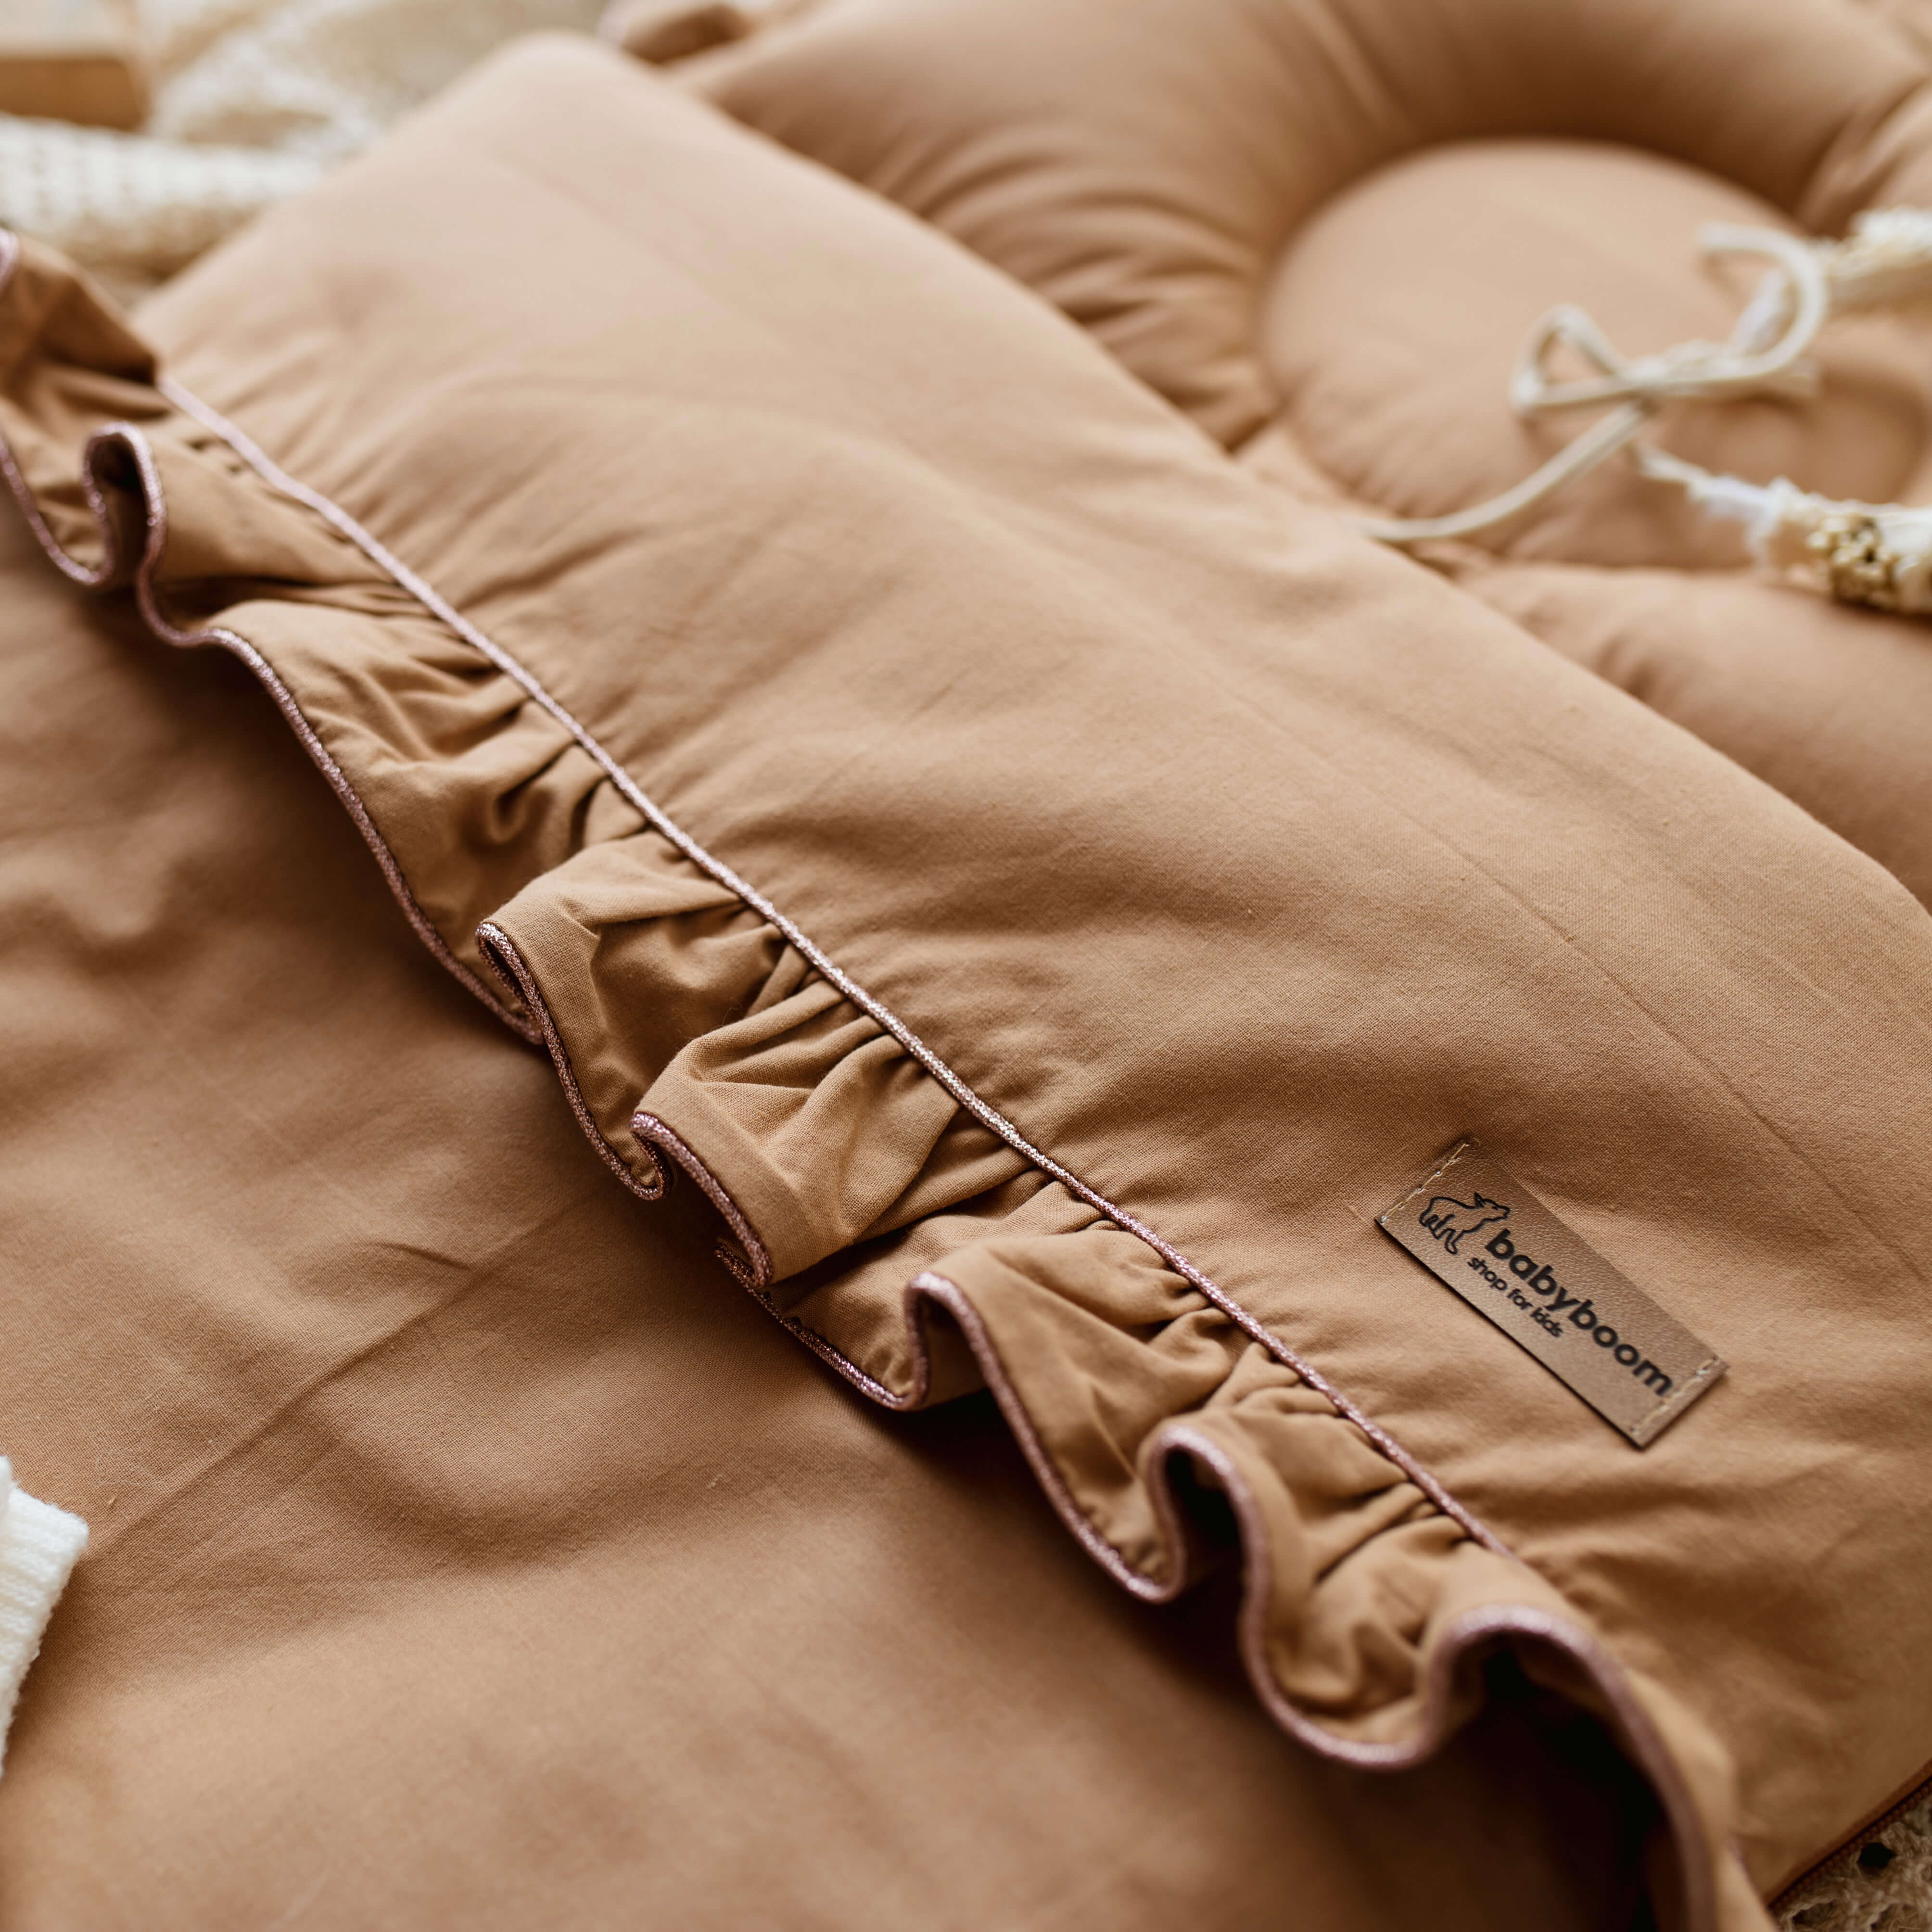 Premium Babyschlafsack SHINY mit Rüschen | Baumwolle